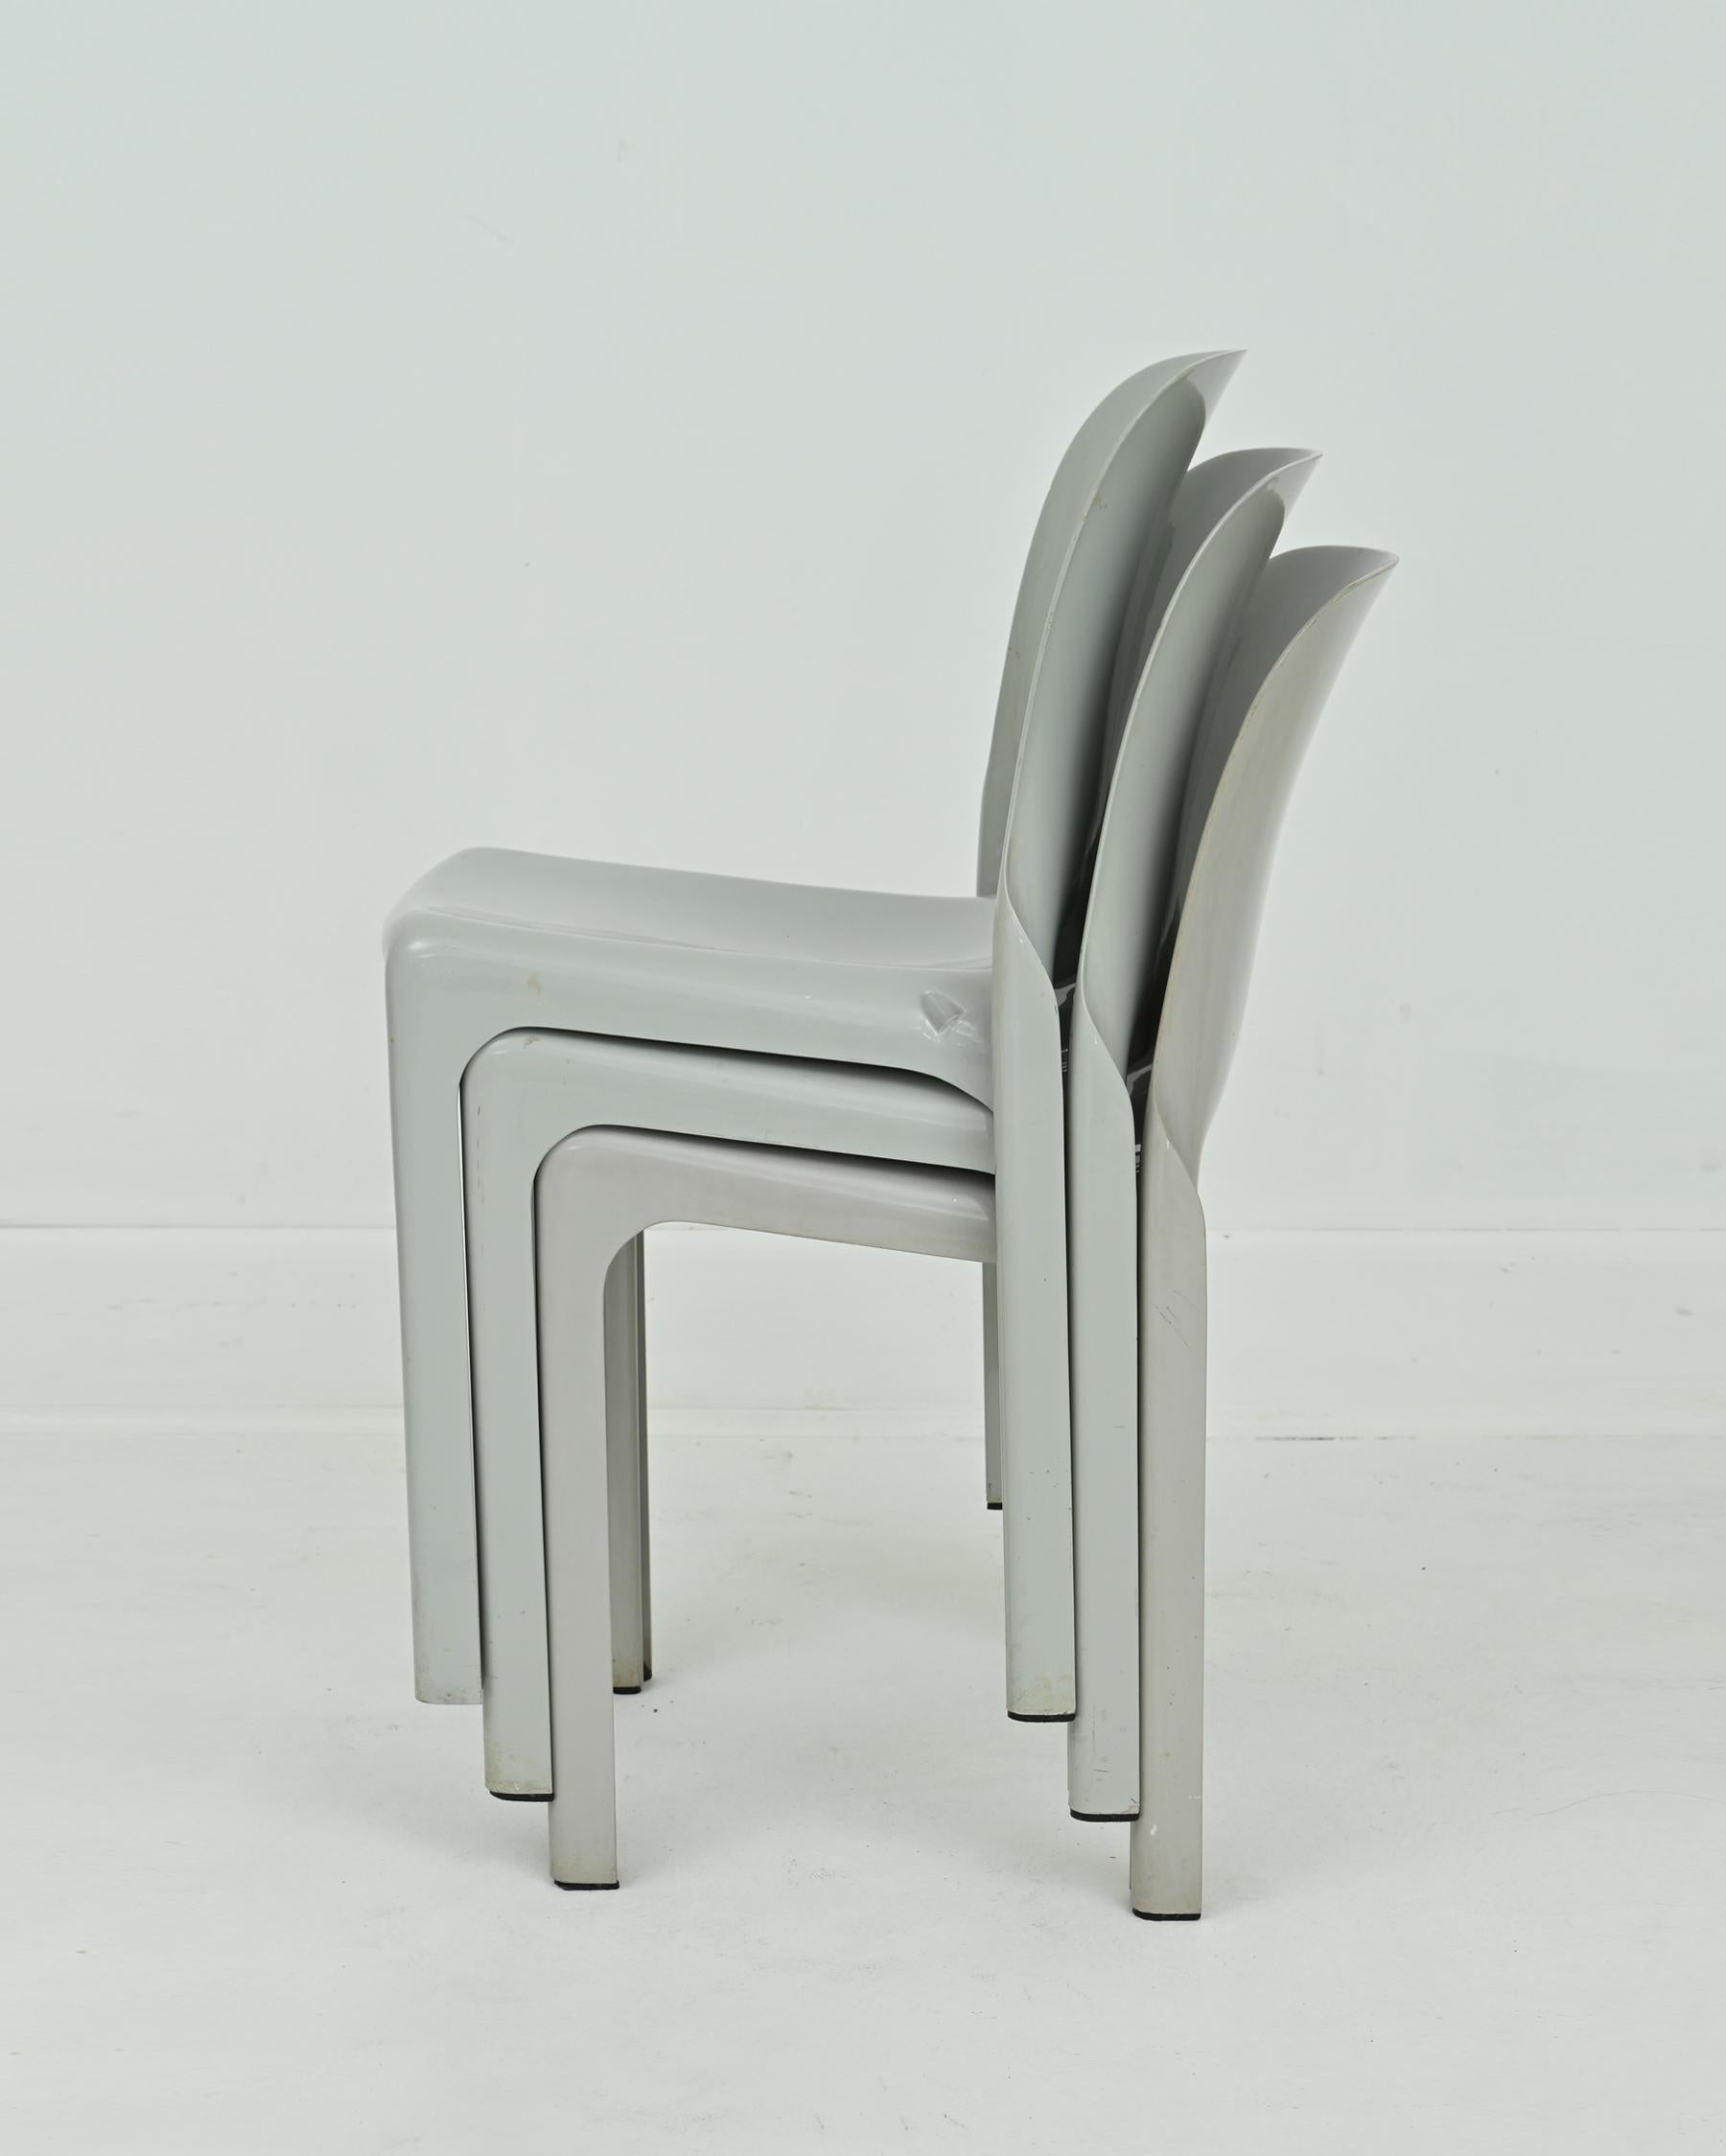 Chaise Selene grise des années 1960 par Vico Magistretti pour Artemide. Ces chaises ont été moulées en une seule pièce en plastique gris renforcé de fibre de verre. Empilable et adapté à une utilisation intérieure et extérieure. Très bon état avec